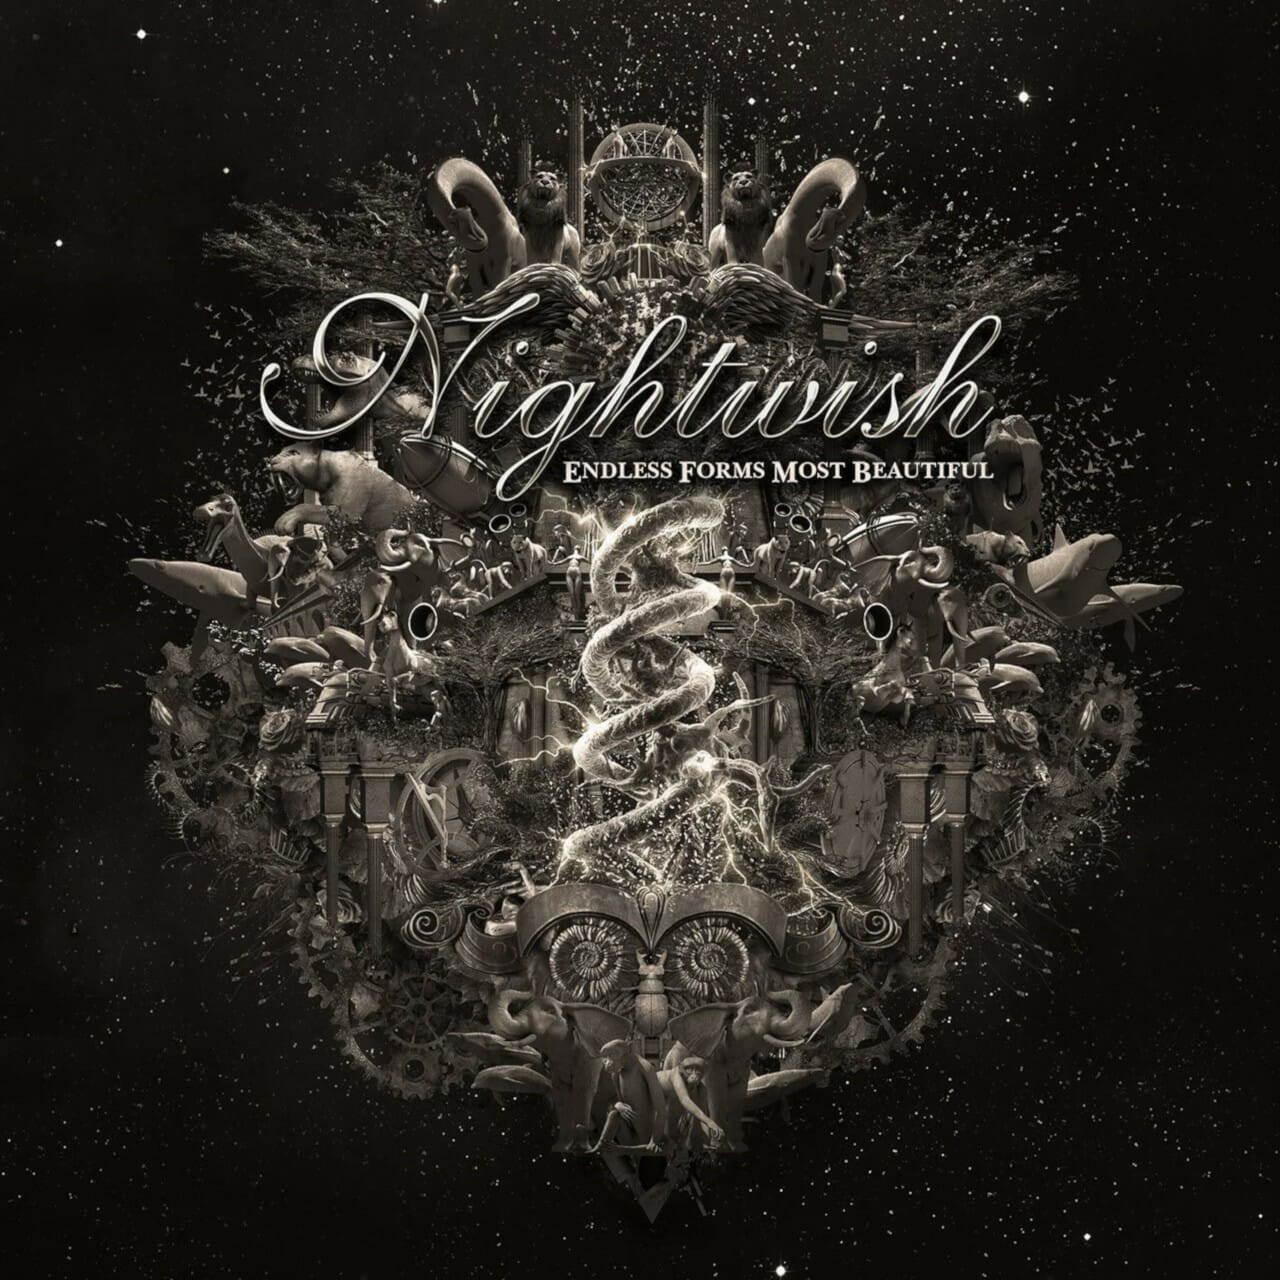 Nightwish অন্তহীন ফর্ম সর্বাধিক সুন্দর